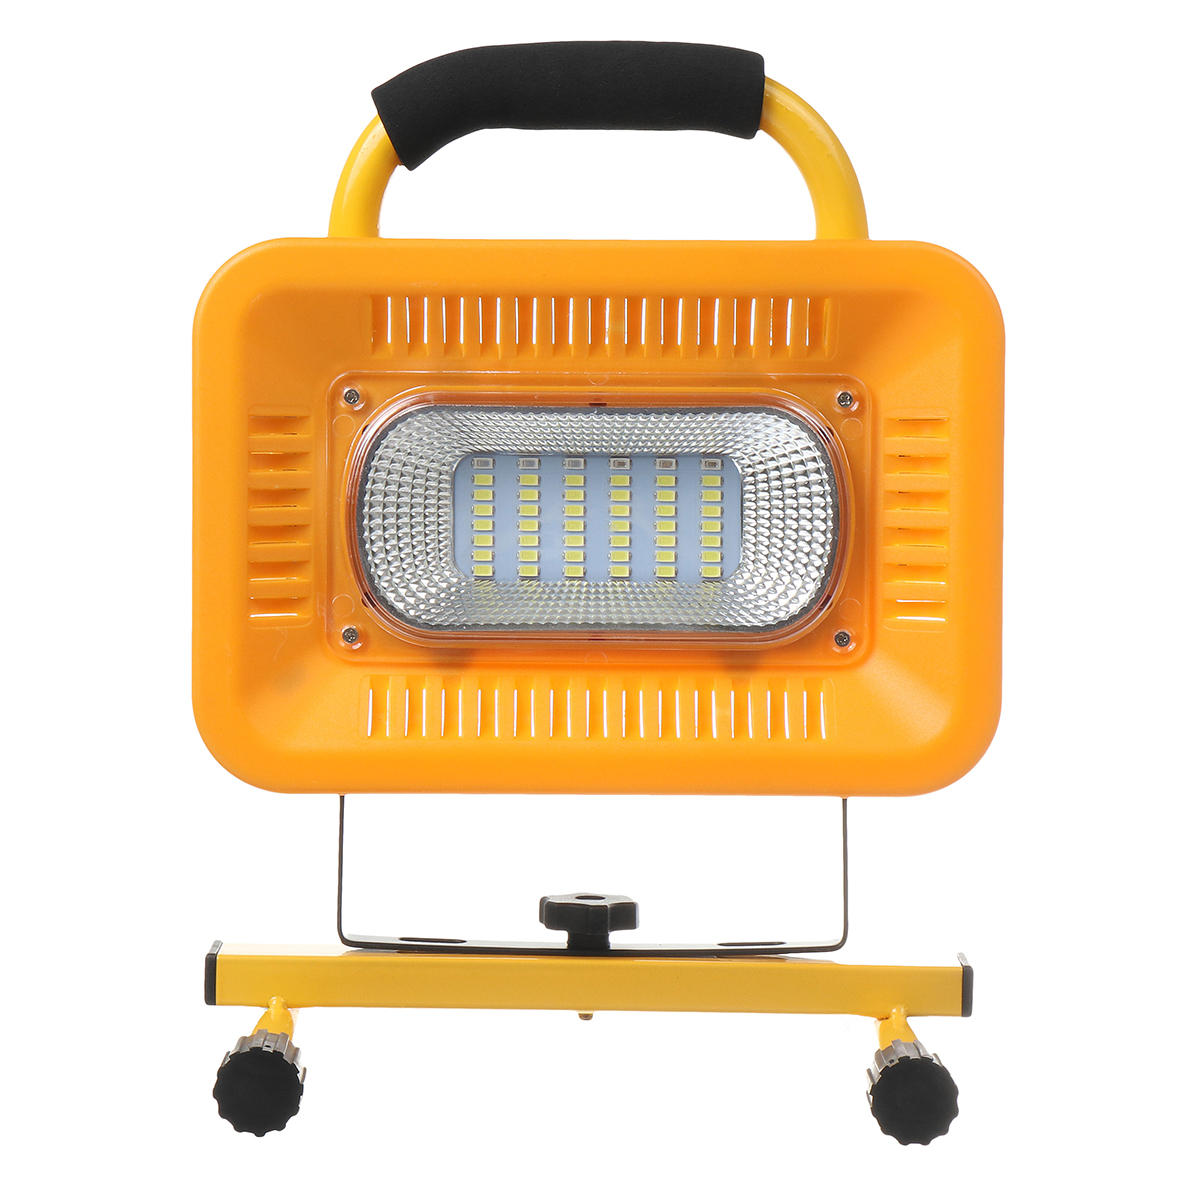 Кемпинговый светодиодный фонарь на 48 светодиодах, водонепроницаемый, 3 режима работы, с возможностью использования в качестве портативного аккумулятора для зарядки устройств во время путешествий на открытом воздухе.